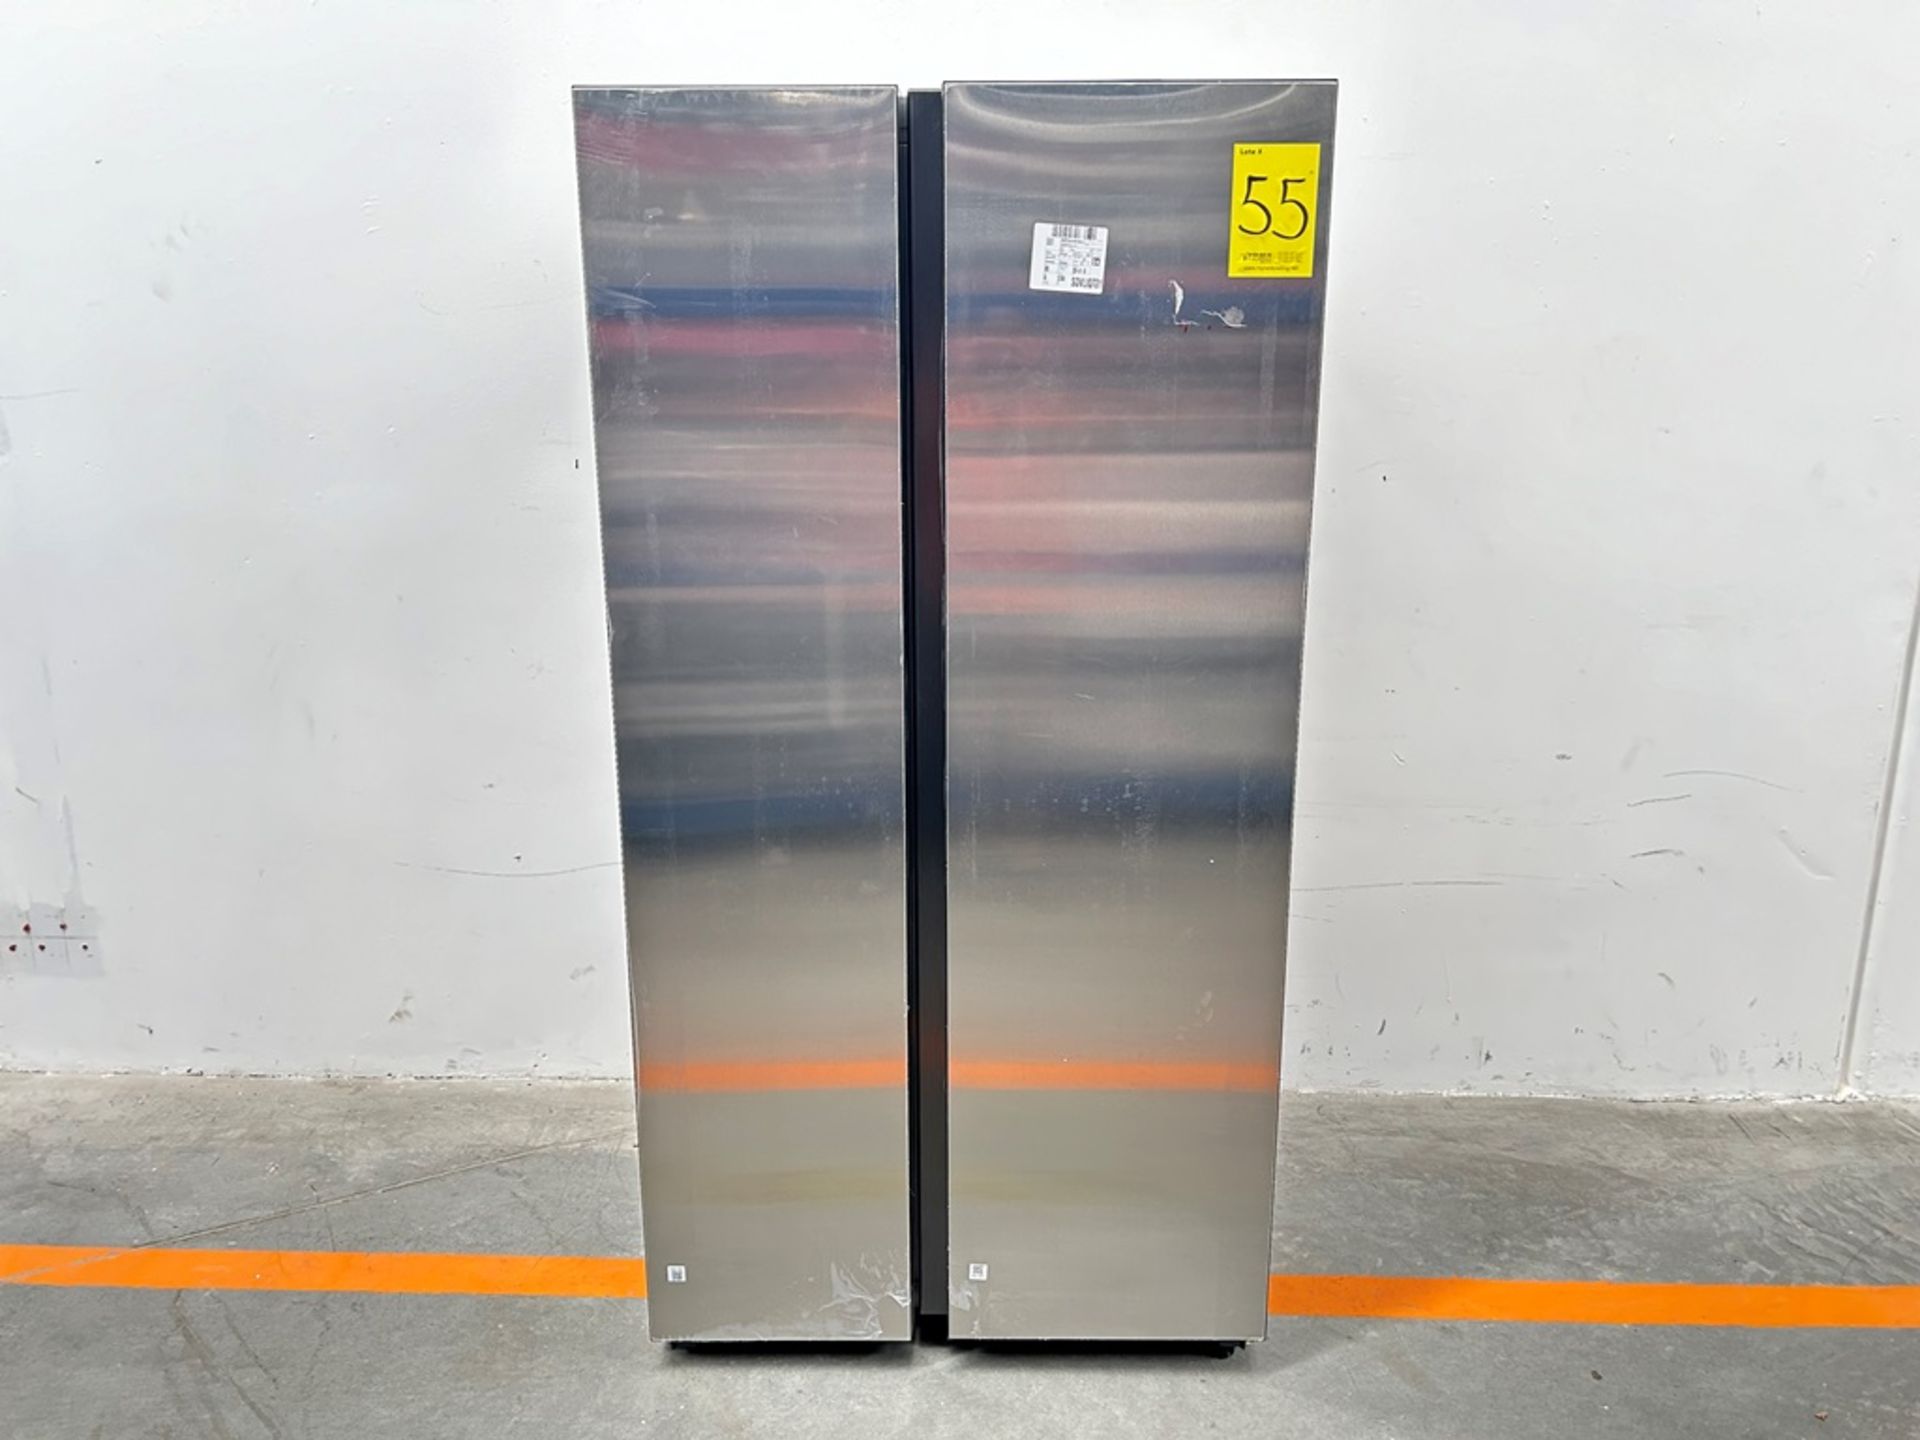 (NUEVO) Refrigerador Marca SAMSUNG, Modelo RS28CB70NAQL, Serie 1186A, Color GRIS